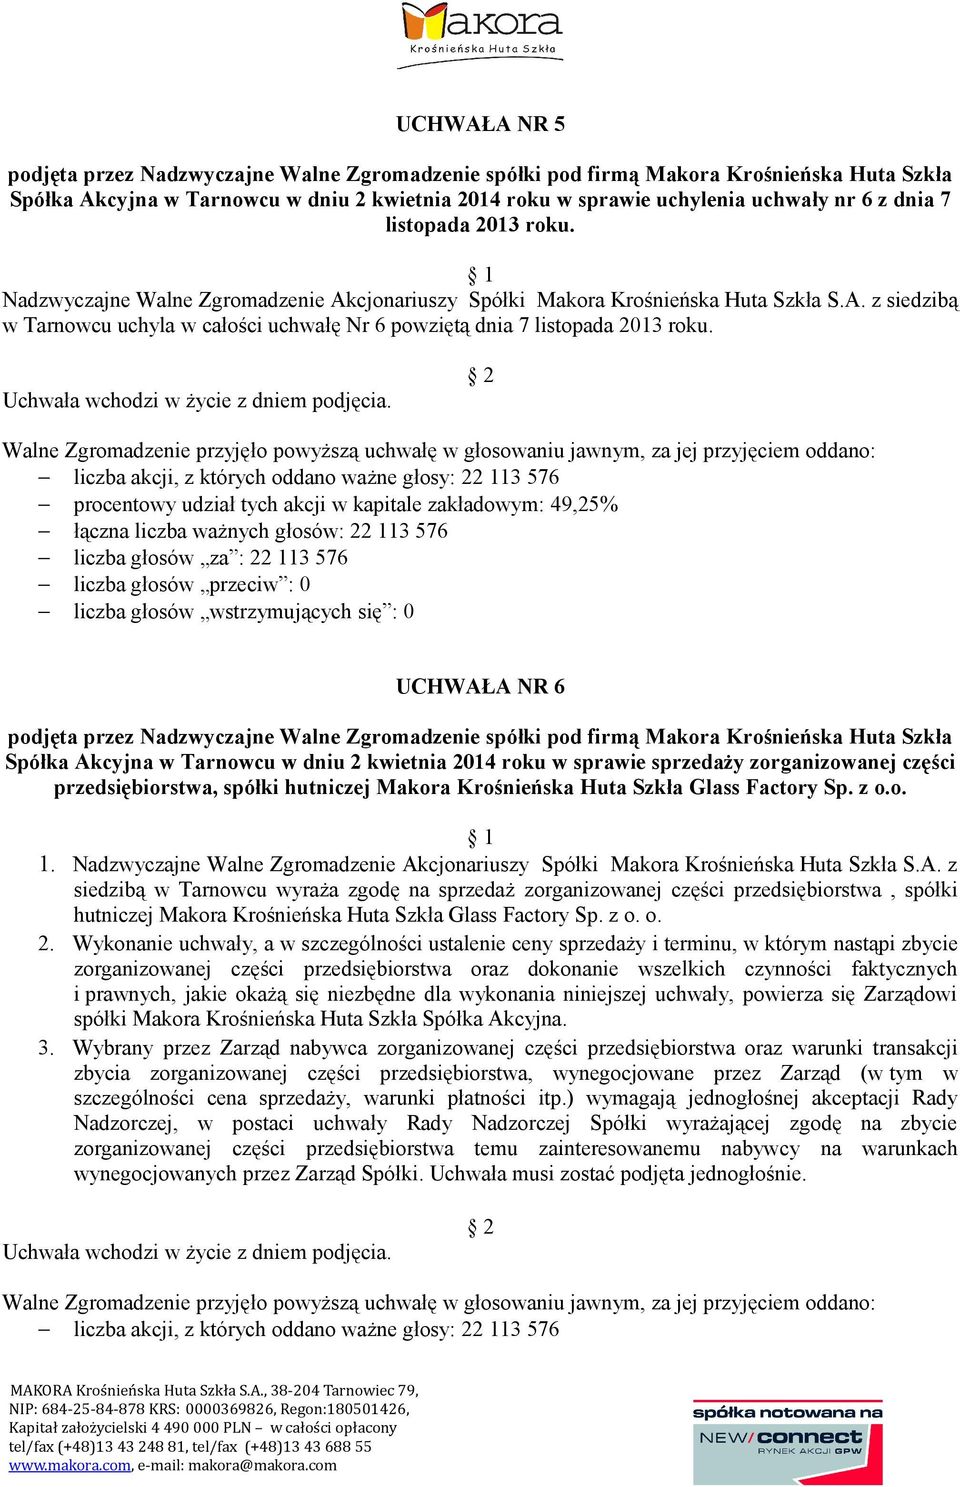 UCHWAŁA NR 6 Spółka Akcyjna w Tarnowcu w dniu 2 kwietnia 2014 roku w sprawie sprzedaży zorganizowanej części przedsiębiorstwa, spółki hutniczej Makora Krośnieńska Huta Szkła Glass Factory Sp. z o.o. 1.